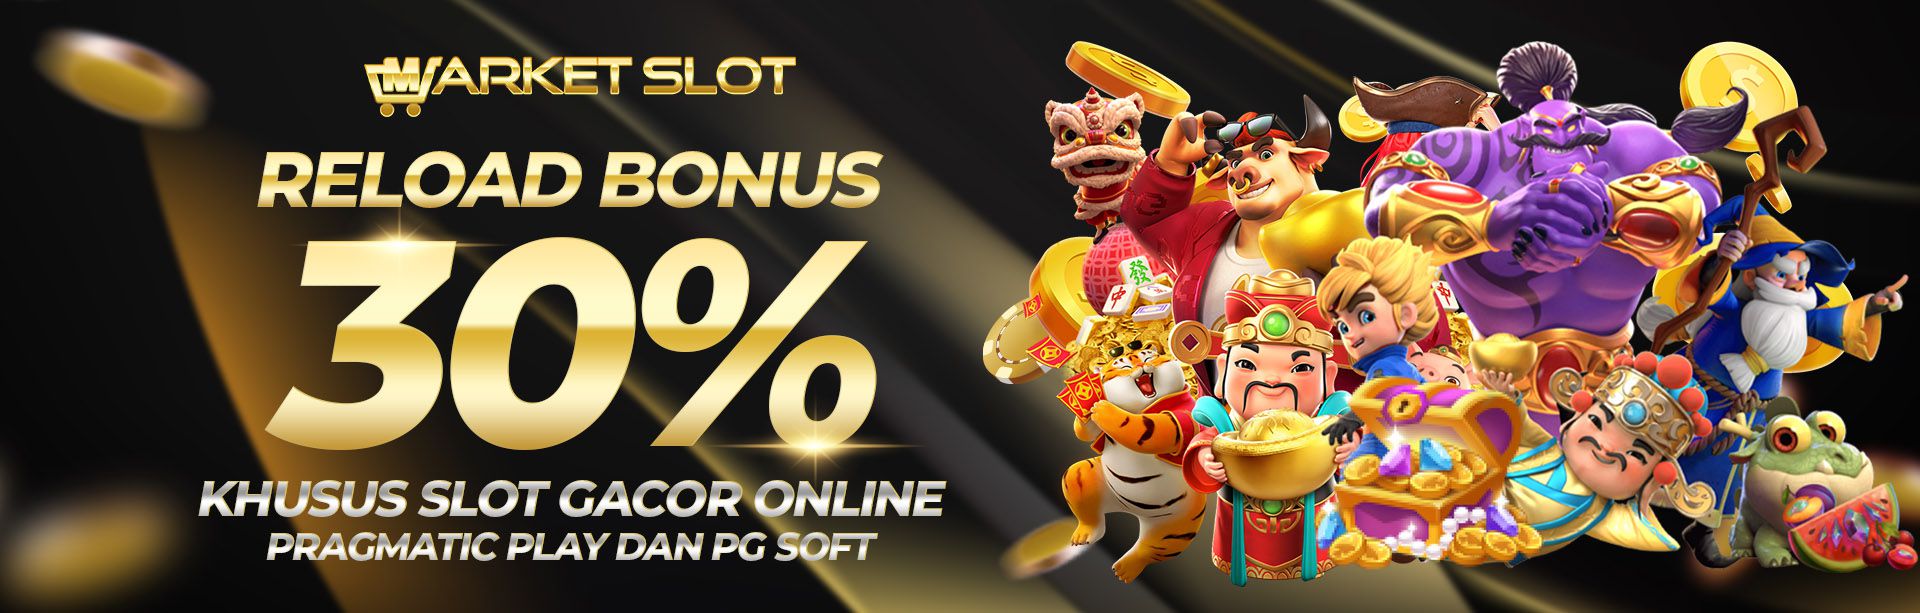 Reload Bonus 30% Khusus Slot Gacor Online Pragmatic Play dan PG SOFT